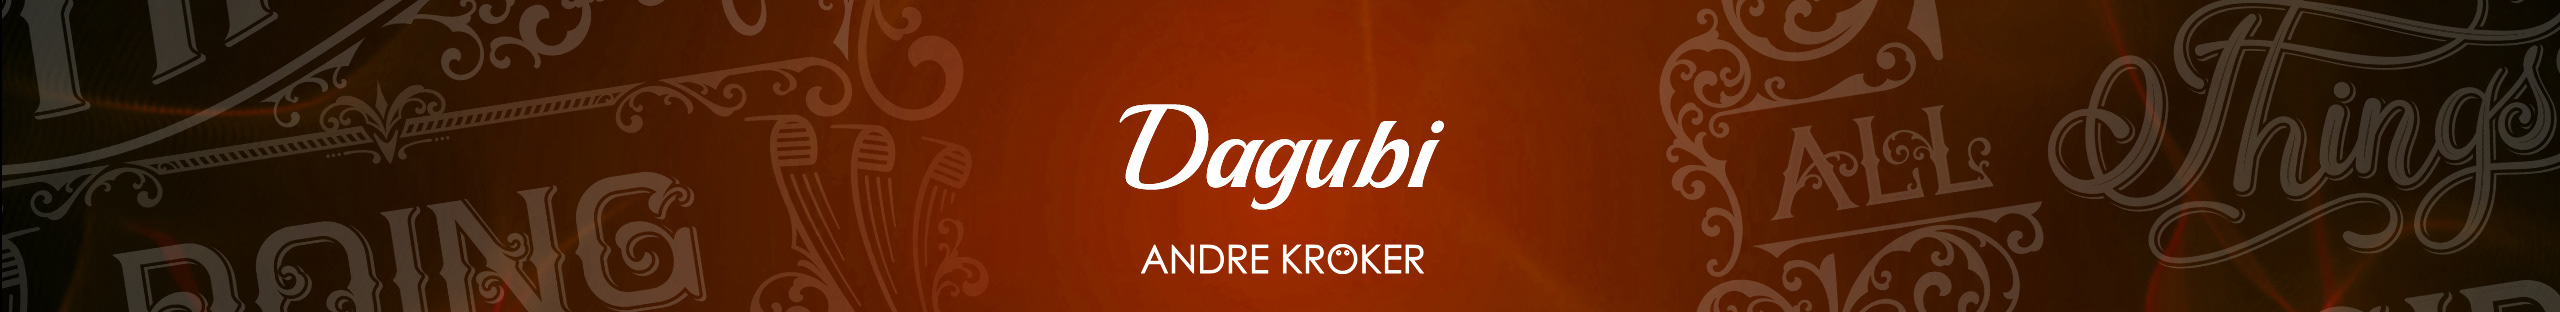 Dagubi - Andre Kröker's profile banner